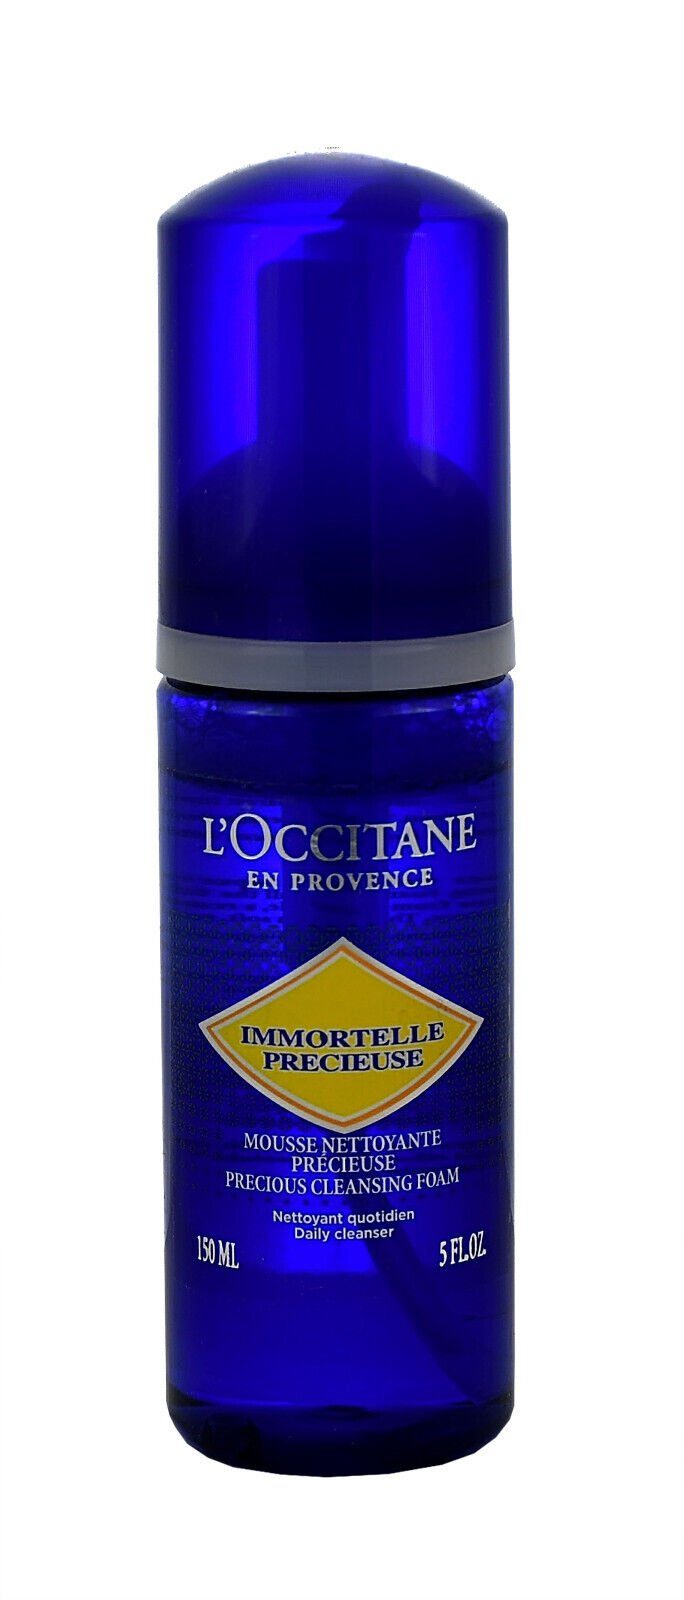 Immortelle Gesichts-Reinigungsschaum L'occitane L'OCCITANE Nettoyante 150ml Mousse Précieuse